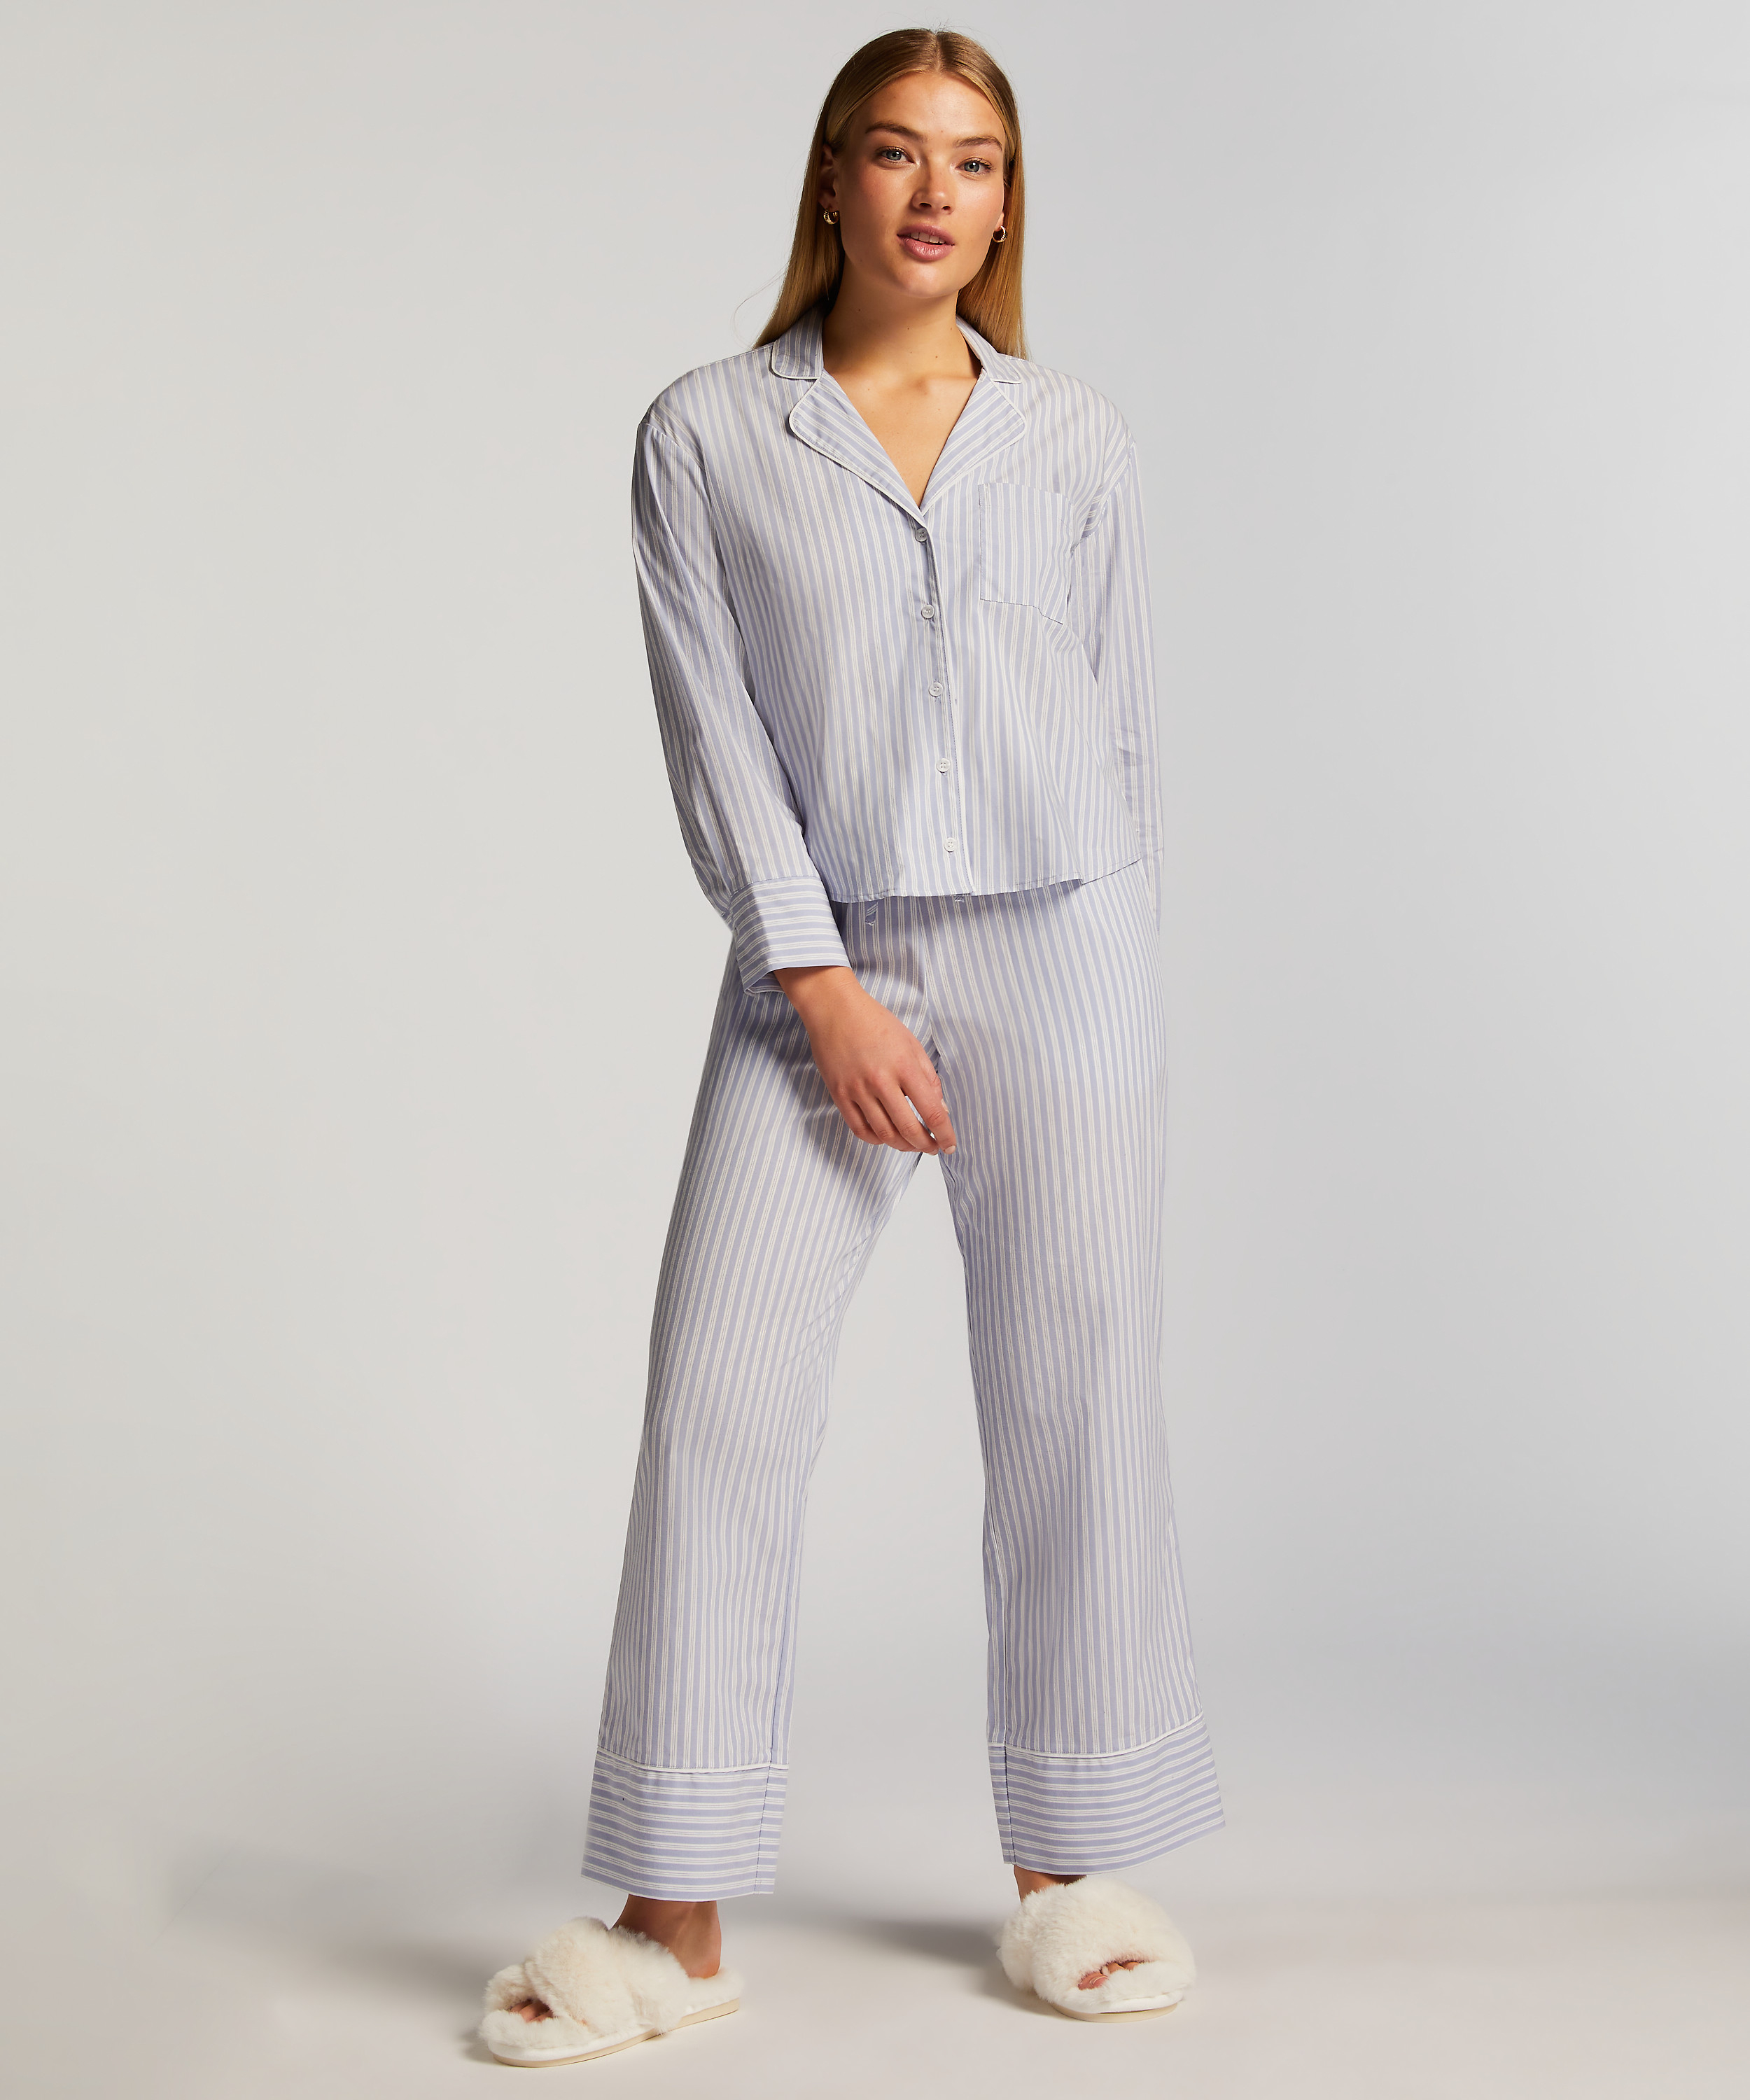 Pyjama broek Stripy, Blauw, main